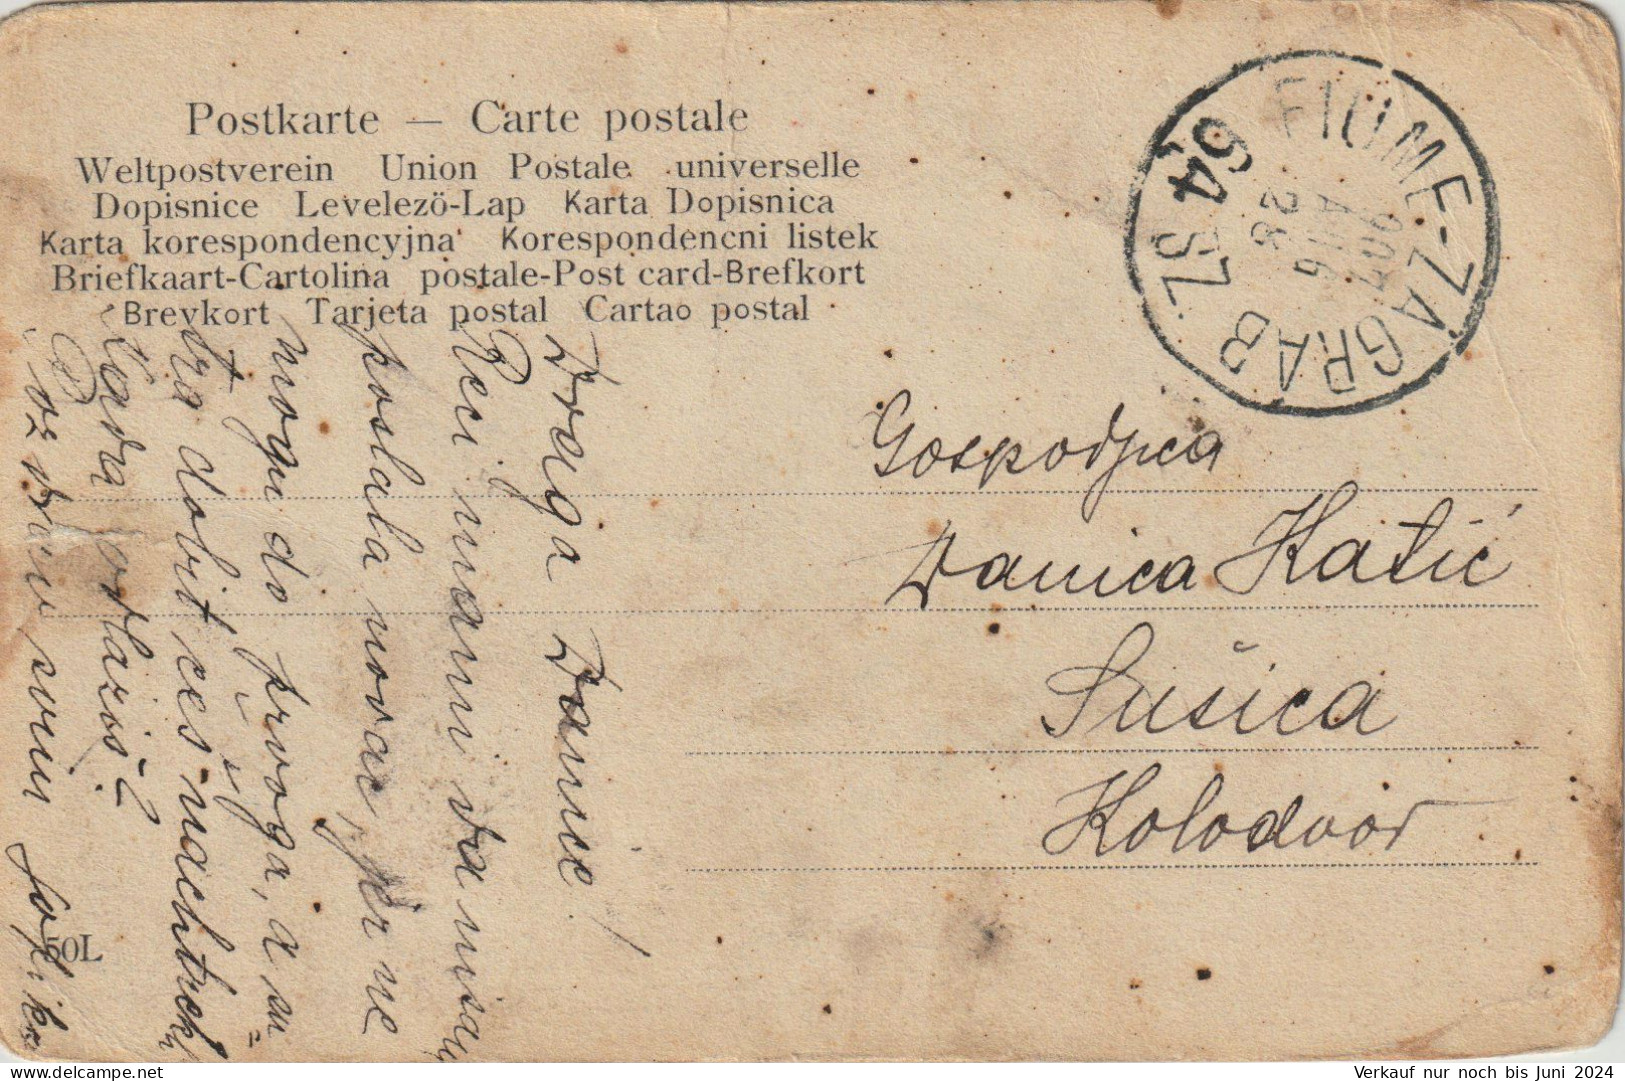 12 Briefe / Karten aus Ungarn mit Bahnpoststempeln (BP002)